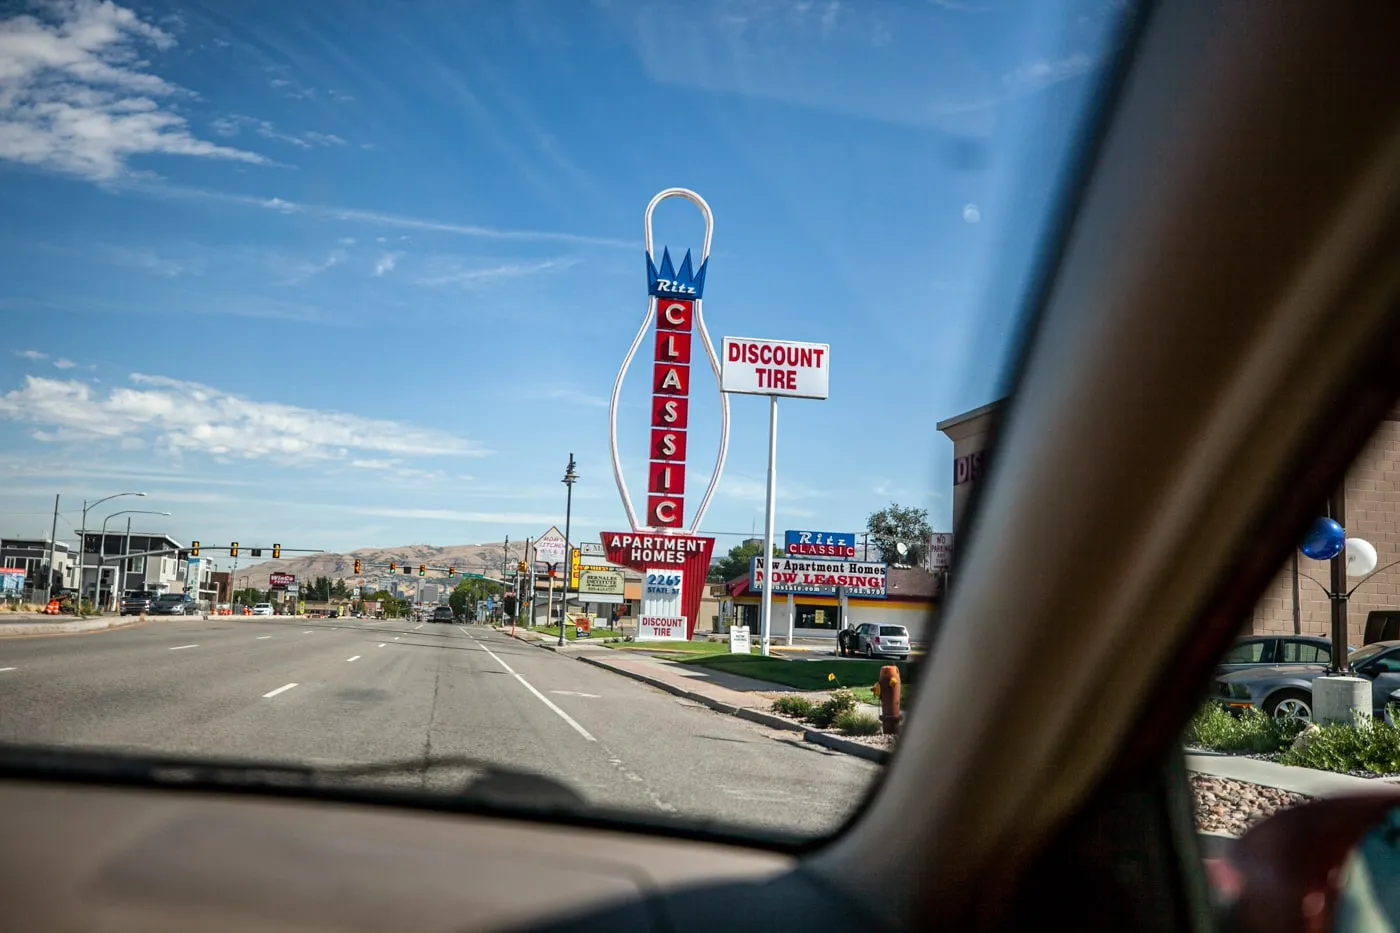 Giant Neon Bowling Pin Sign in Salt Lake City, Utah | Salt Lake City Roadside Attractions in Utah